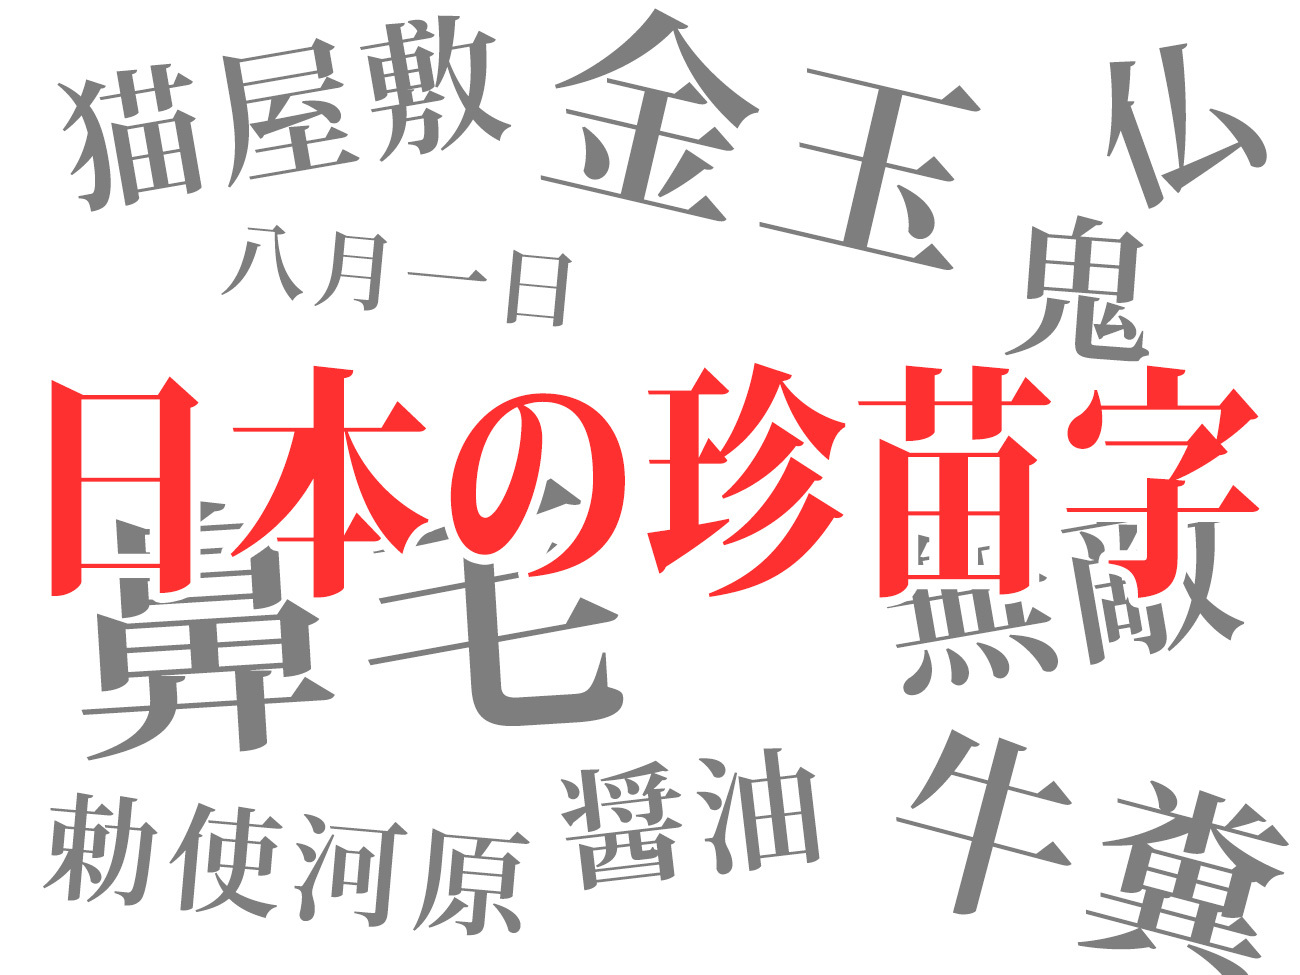 衝撃 実在する日本人の珍しい苗字25選 信じられないけど存在する凄い苗字 17年1月21日 のコメント一覧 エキサイトニュース